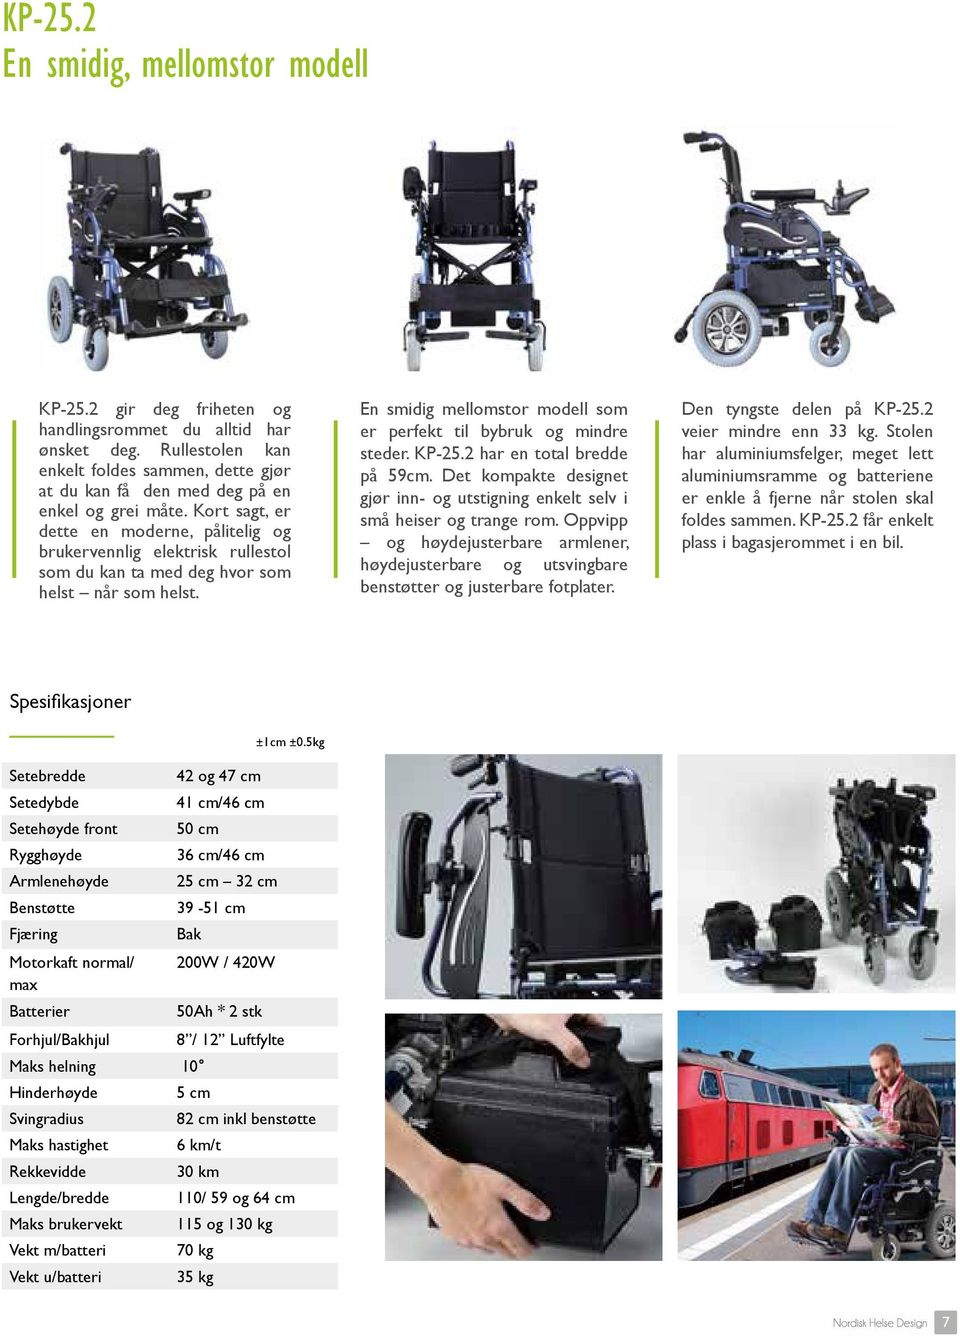 Kort sagt, er dette en moderne, pålitelig og brukervennlig elektrisk rullestol som du kan ta med deg hvor som helst når som helst.